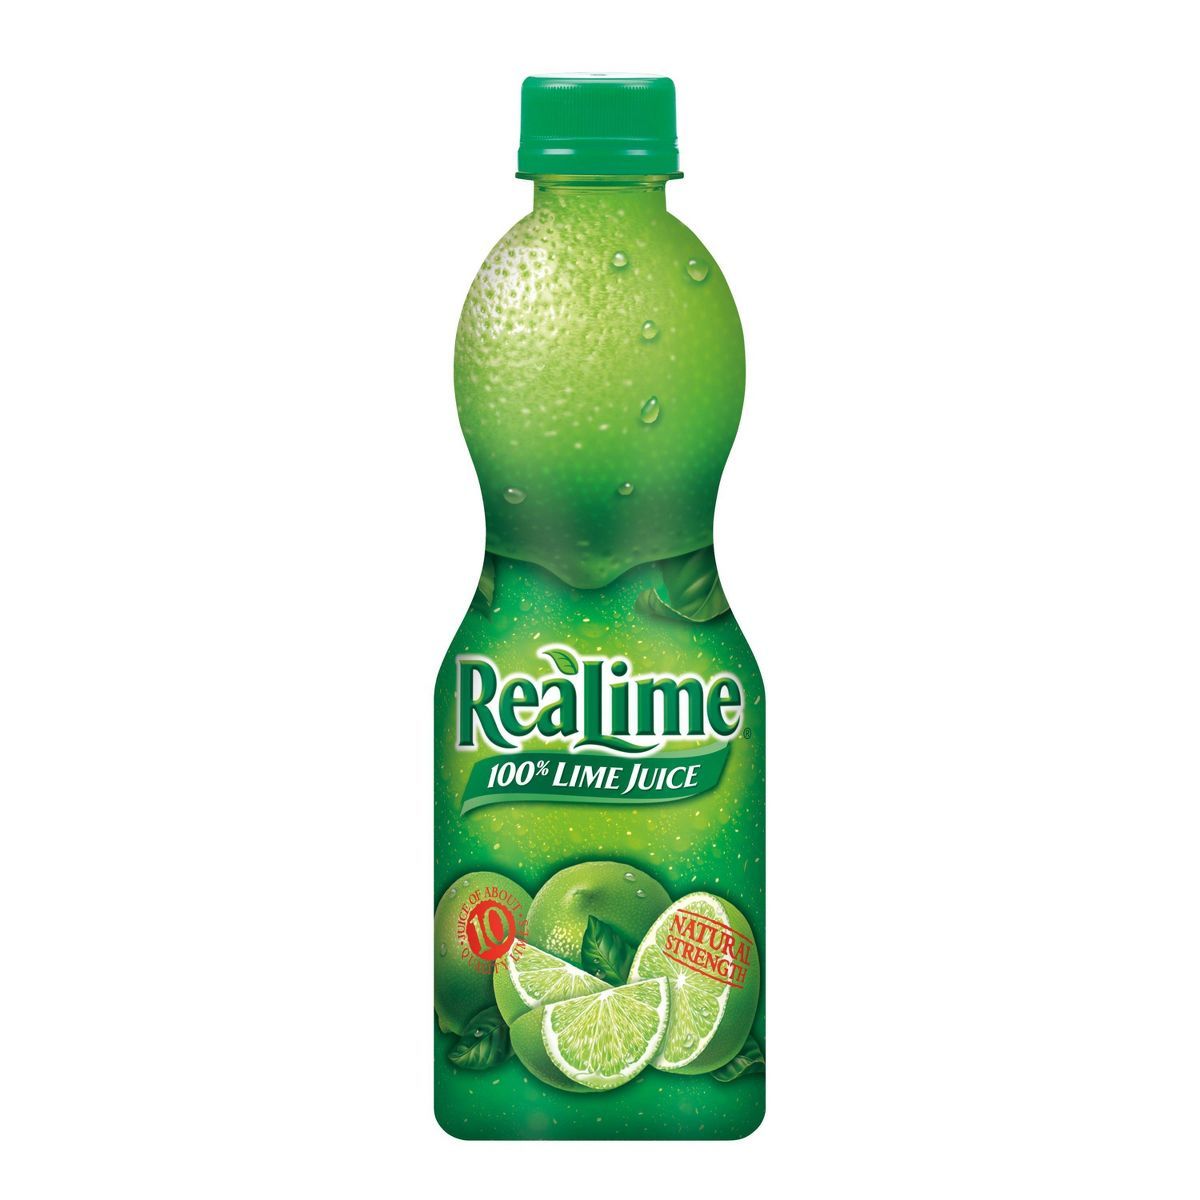 ReaLime 100% Lime Juice - 15 fl oz Bottle | Target